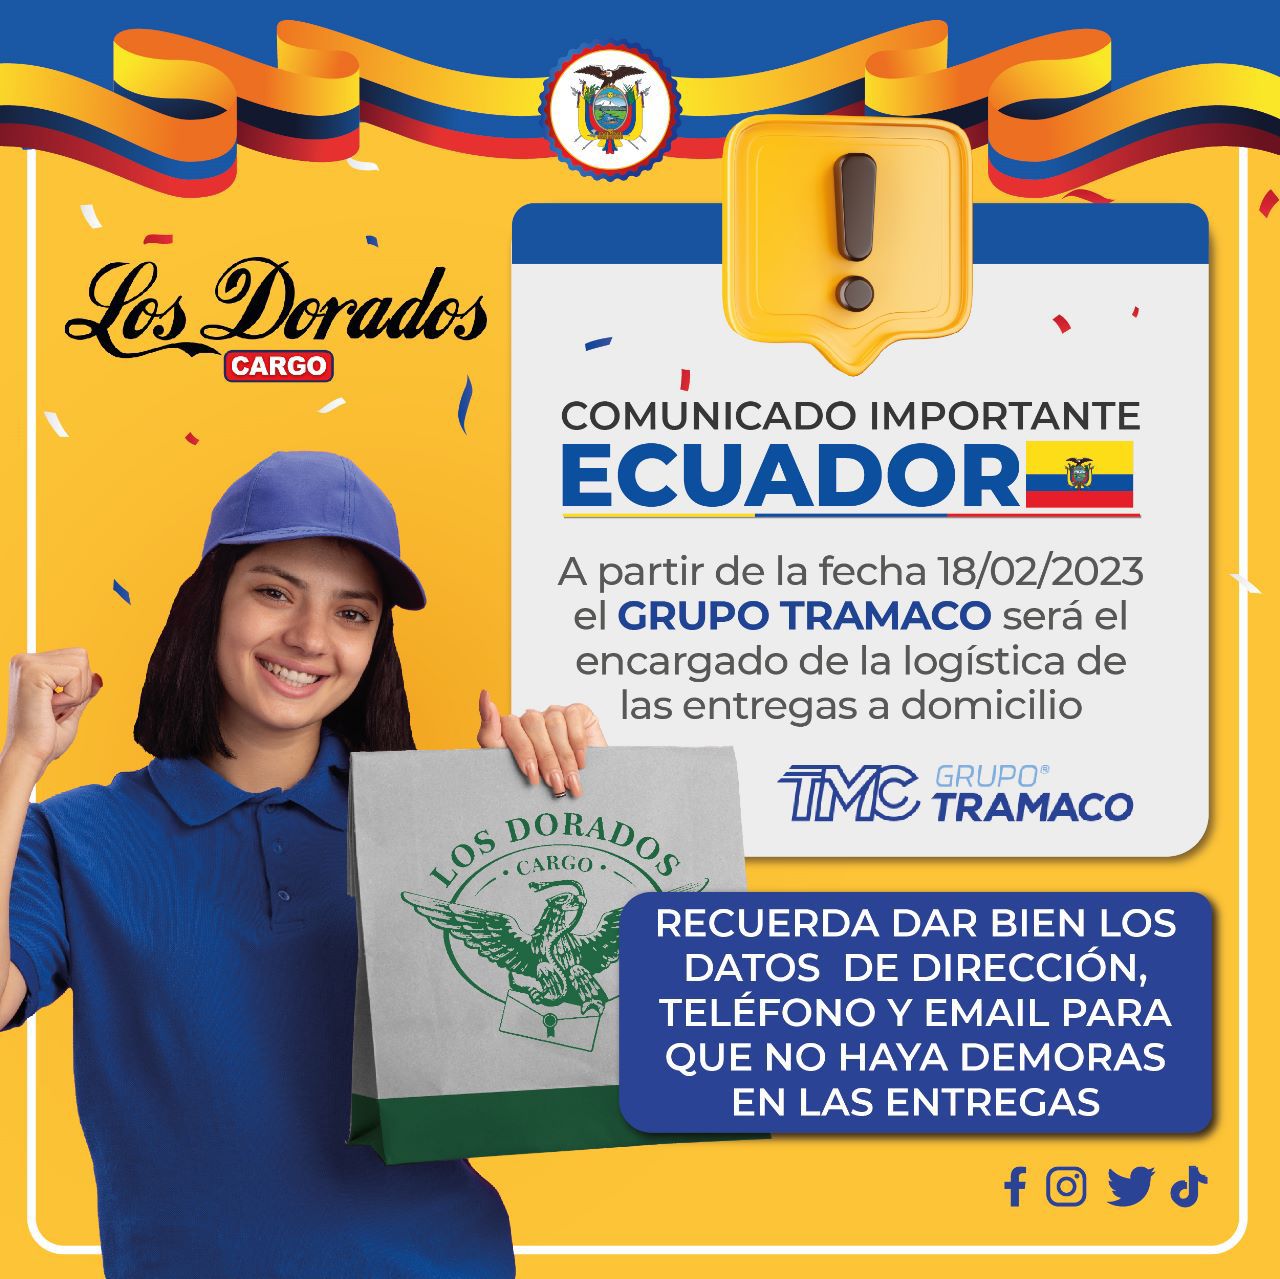 Comunicado Importante Ecuador